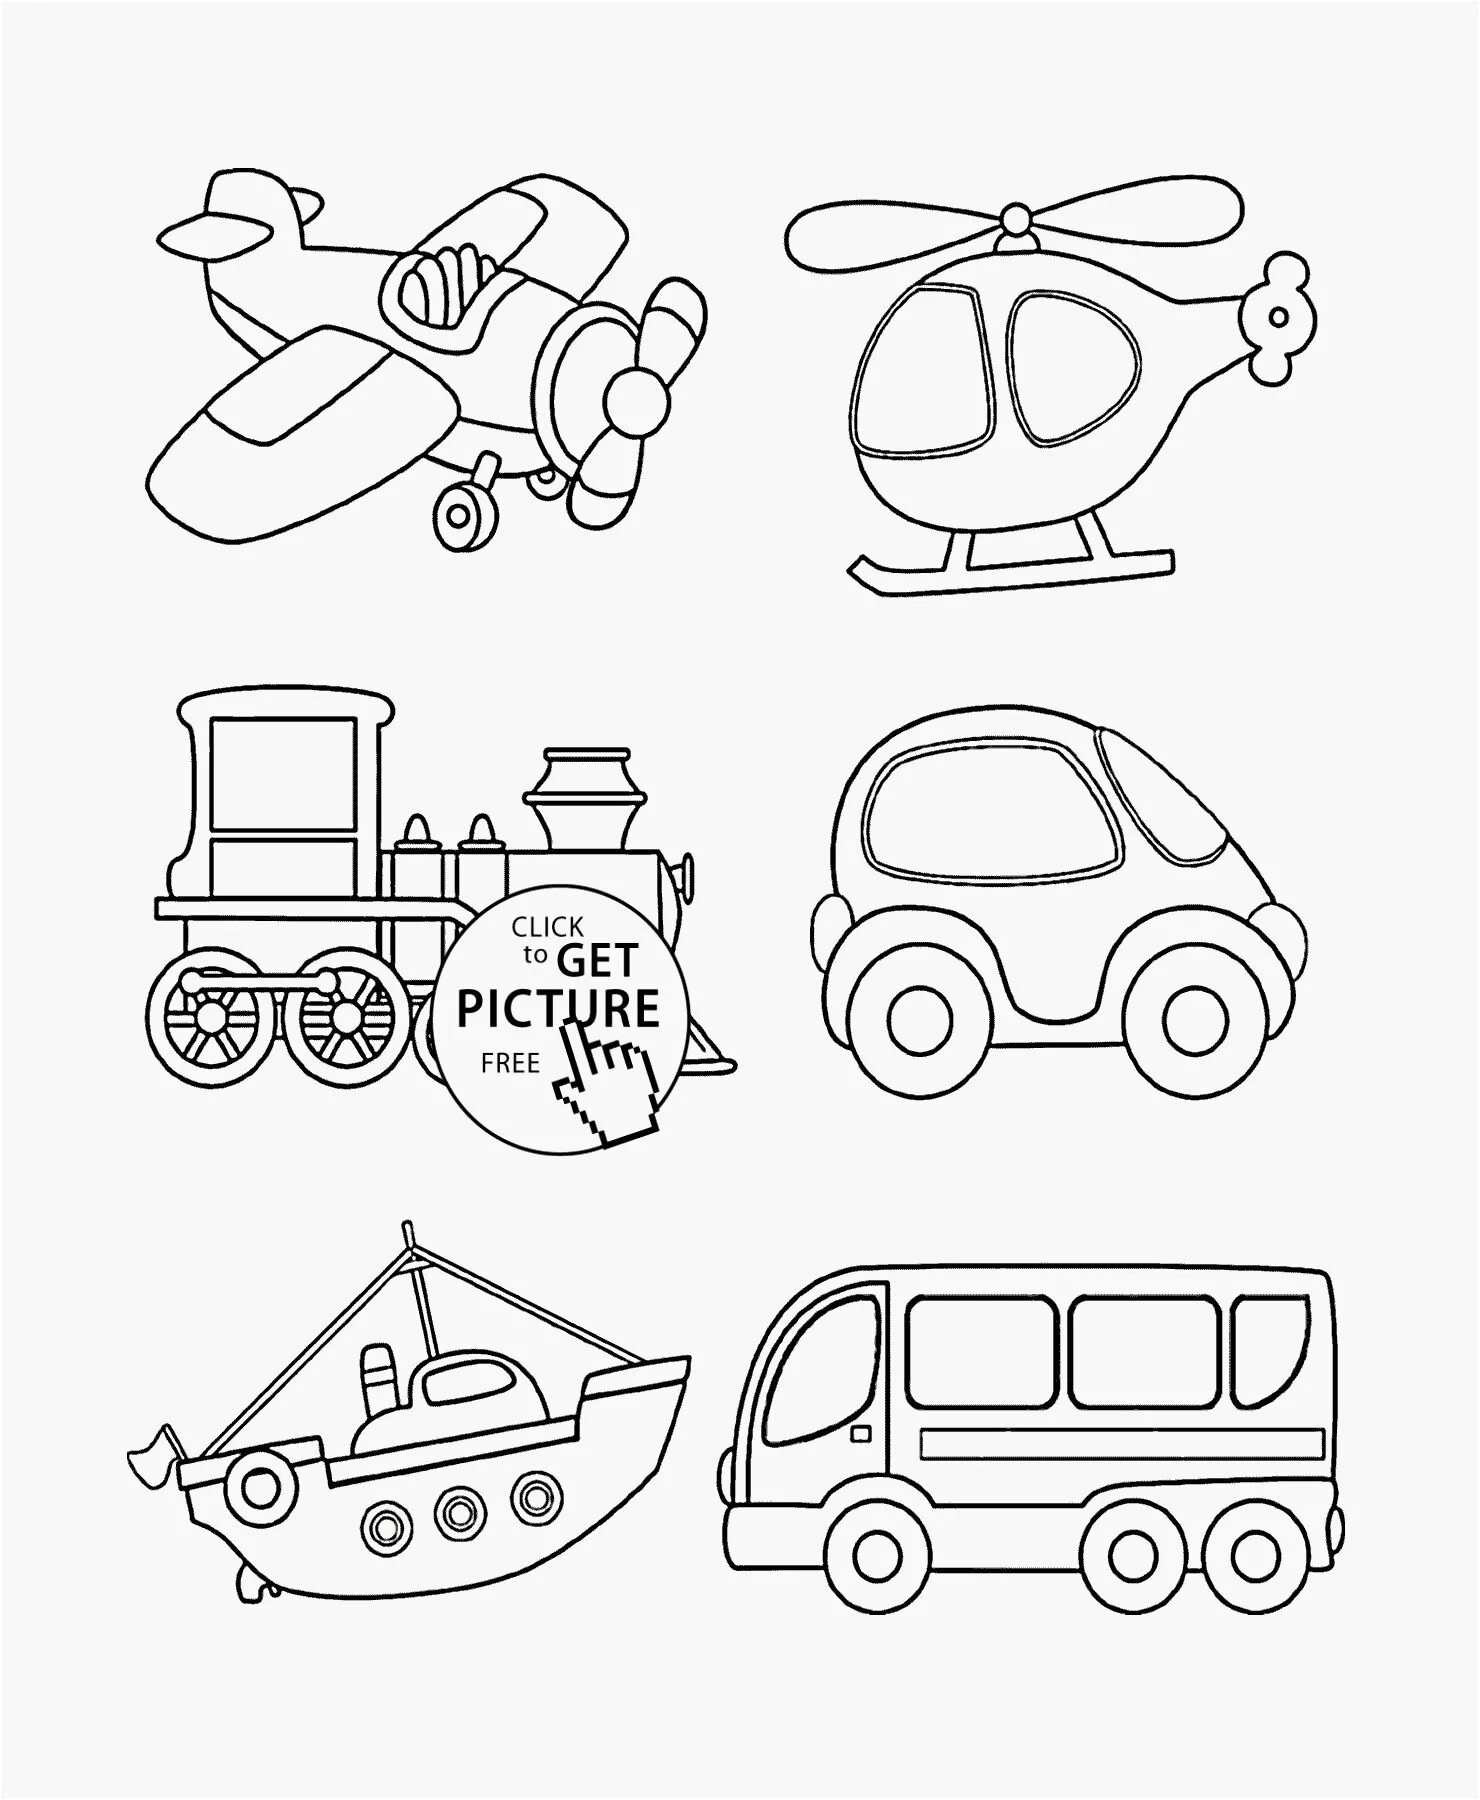 4 картинки раскрашивать. Раскраски. Транспорт. Транспорт раскраска для детей. Рисунки для детей для раскрашивания транспорт. Раскраскаидля малышей.